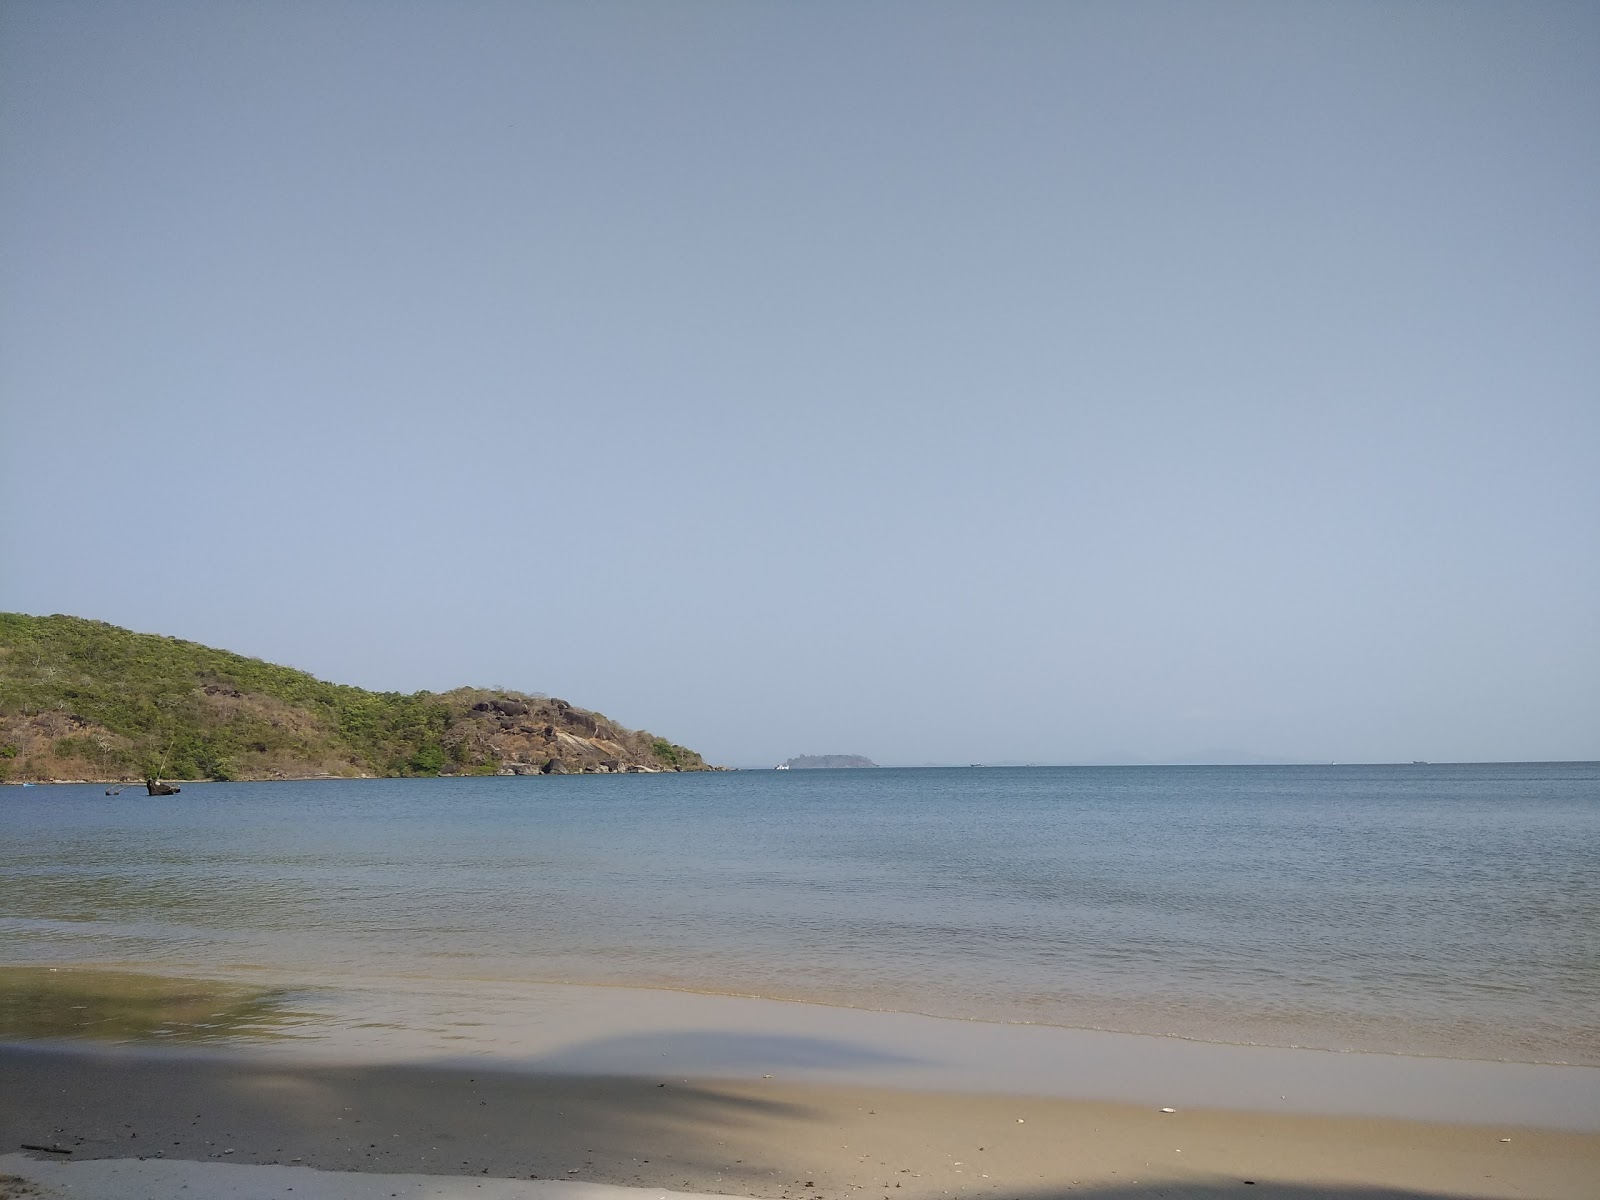 Kamal Jungle beach'in fotoğrafı geniş plaj ile birlikte